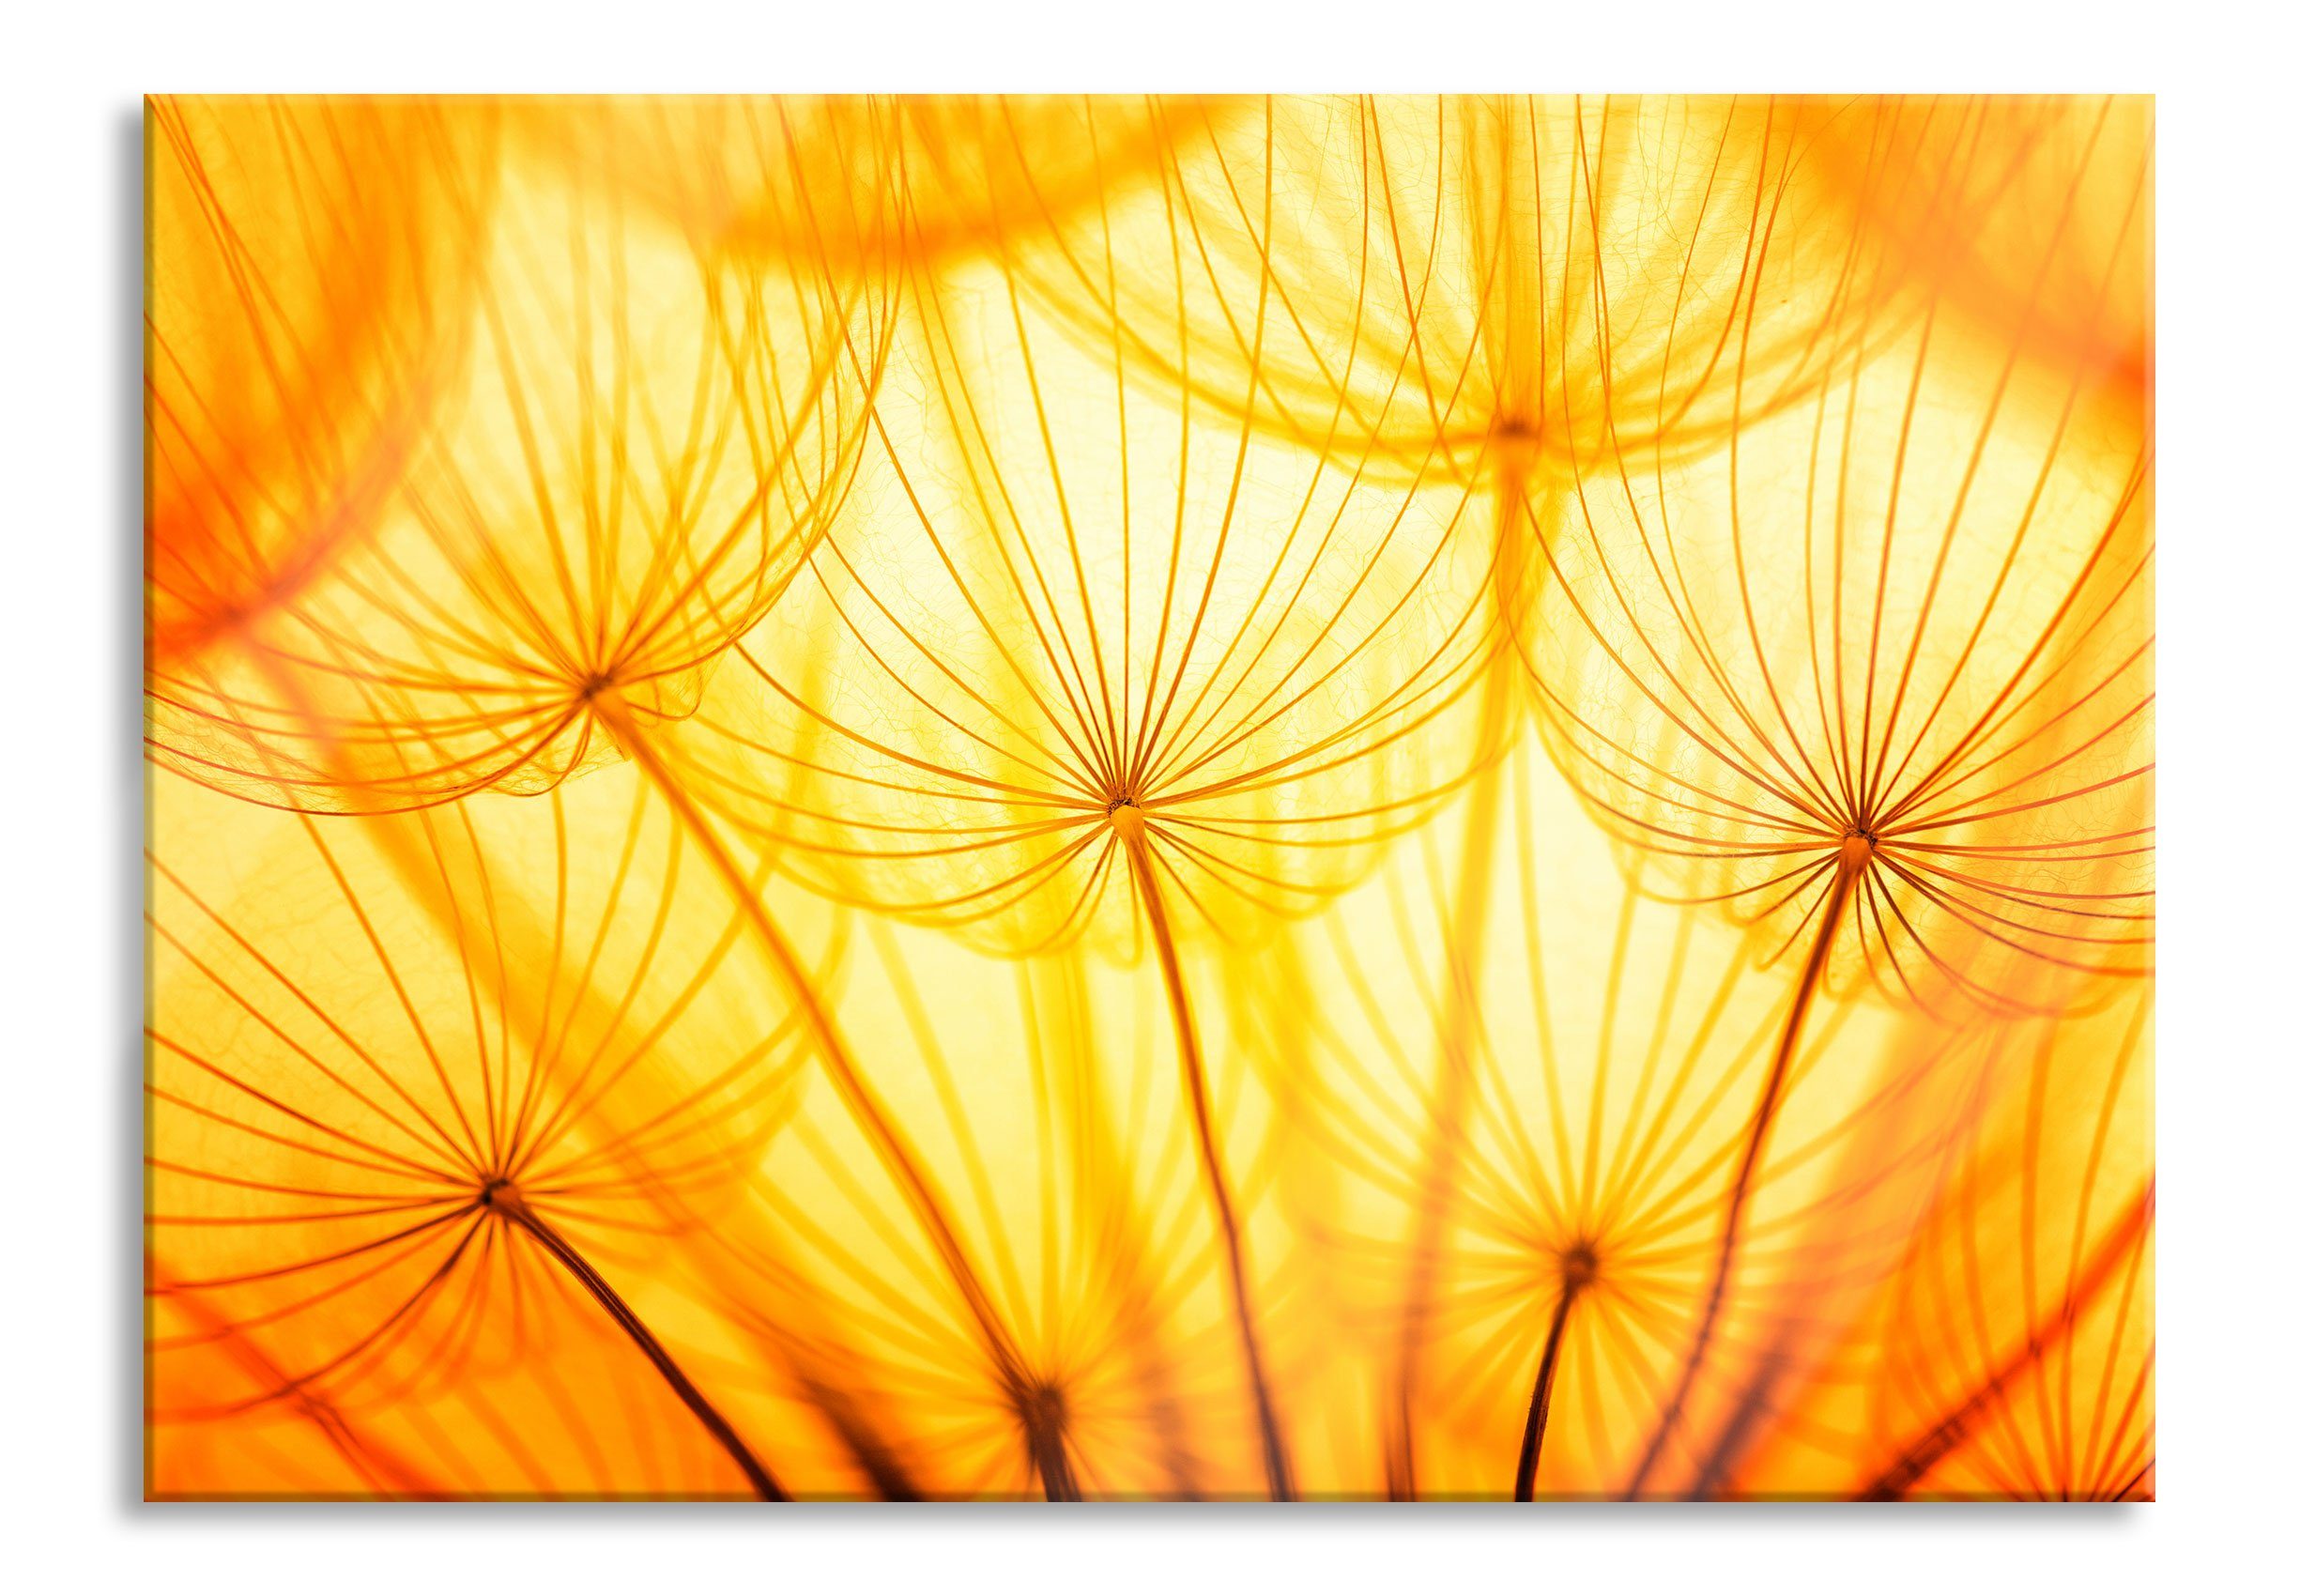 Pixxprint Glasbild Pusteblumen oranges Licht, Pusteblumen oranges Licht (1 St), Glasbild aus Echtglas, inkl. Aufhängungen und Abstandshalter